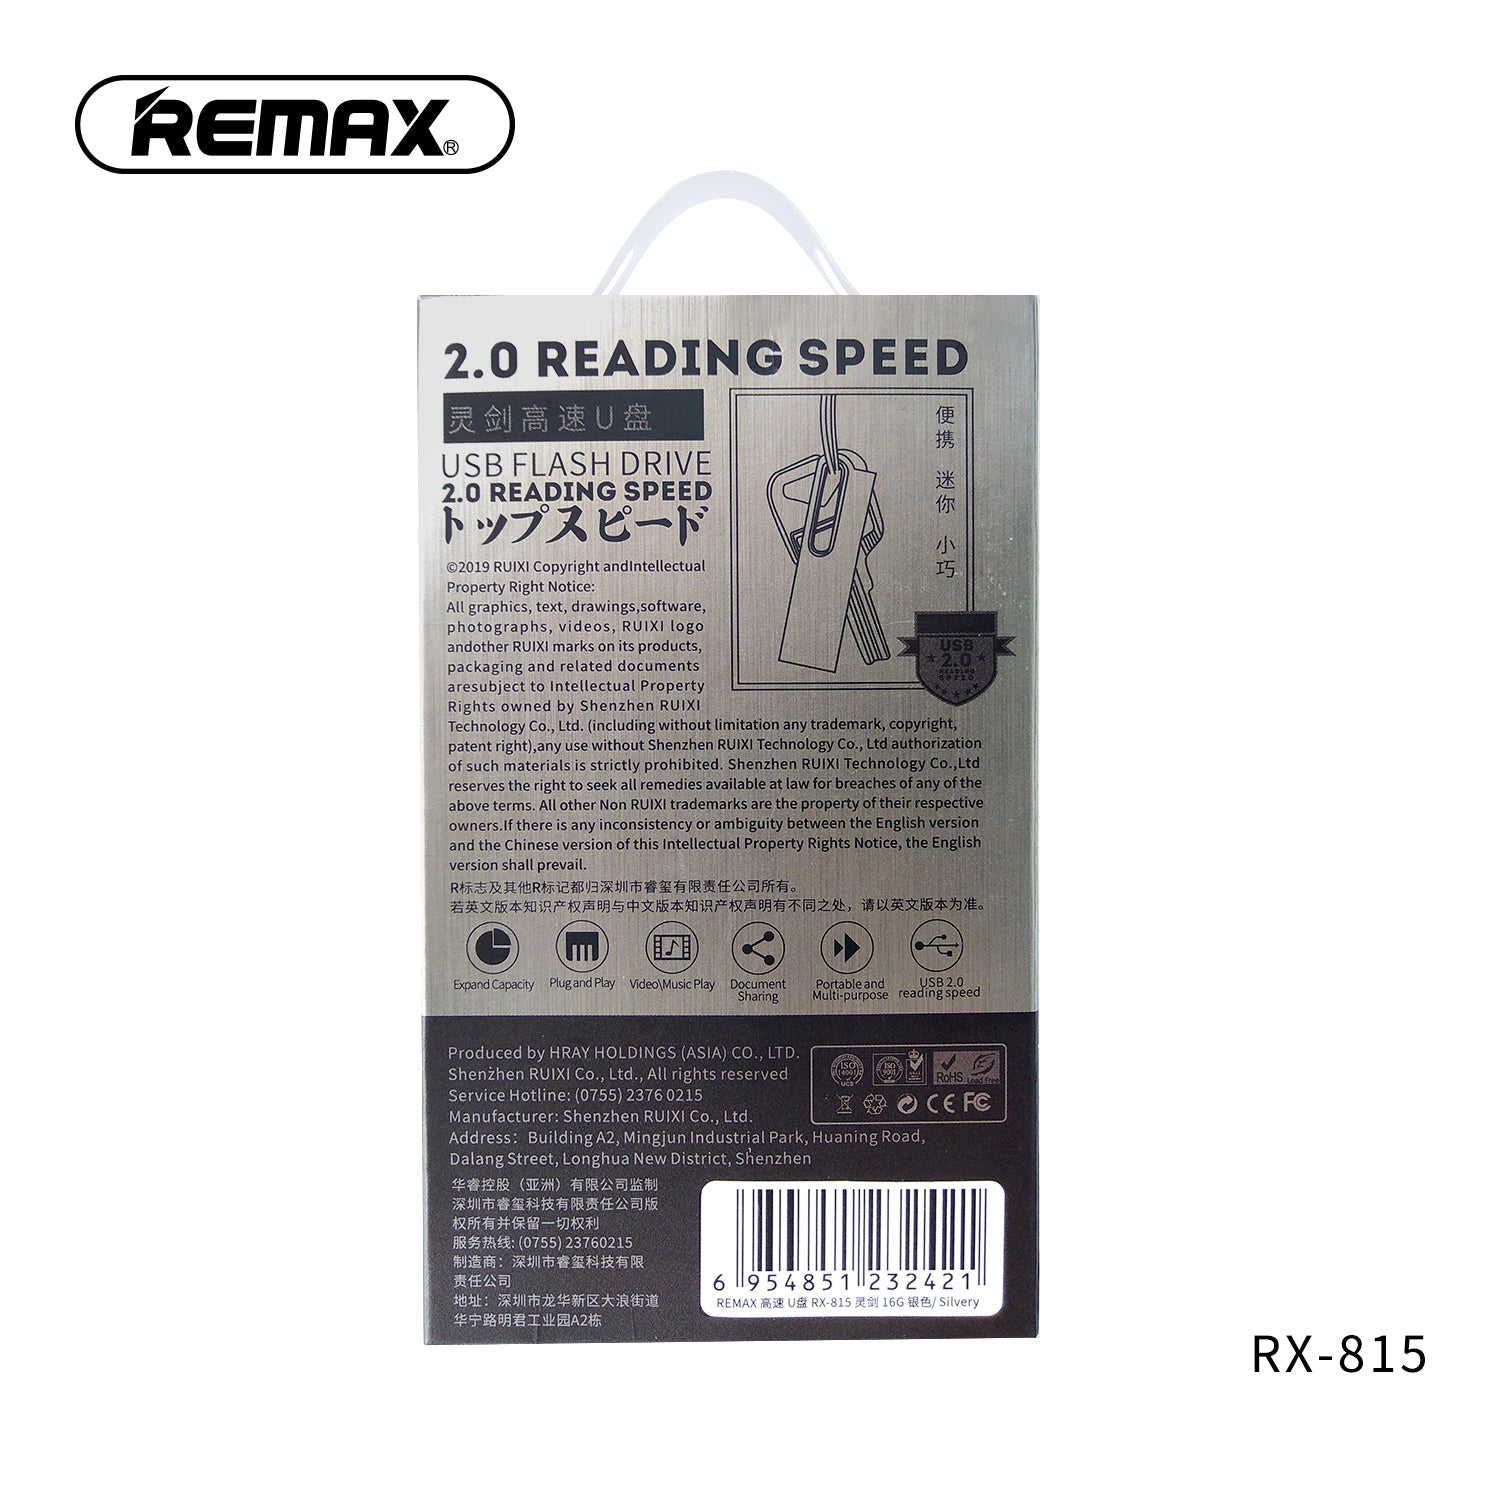 REMAX(RX-815)16GB USB FLASH DRIVE